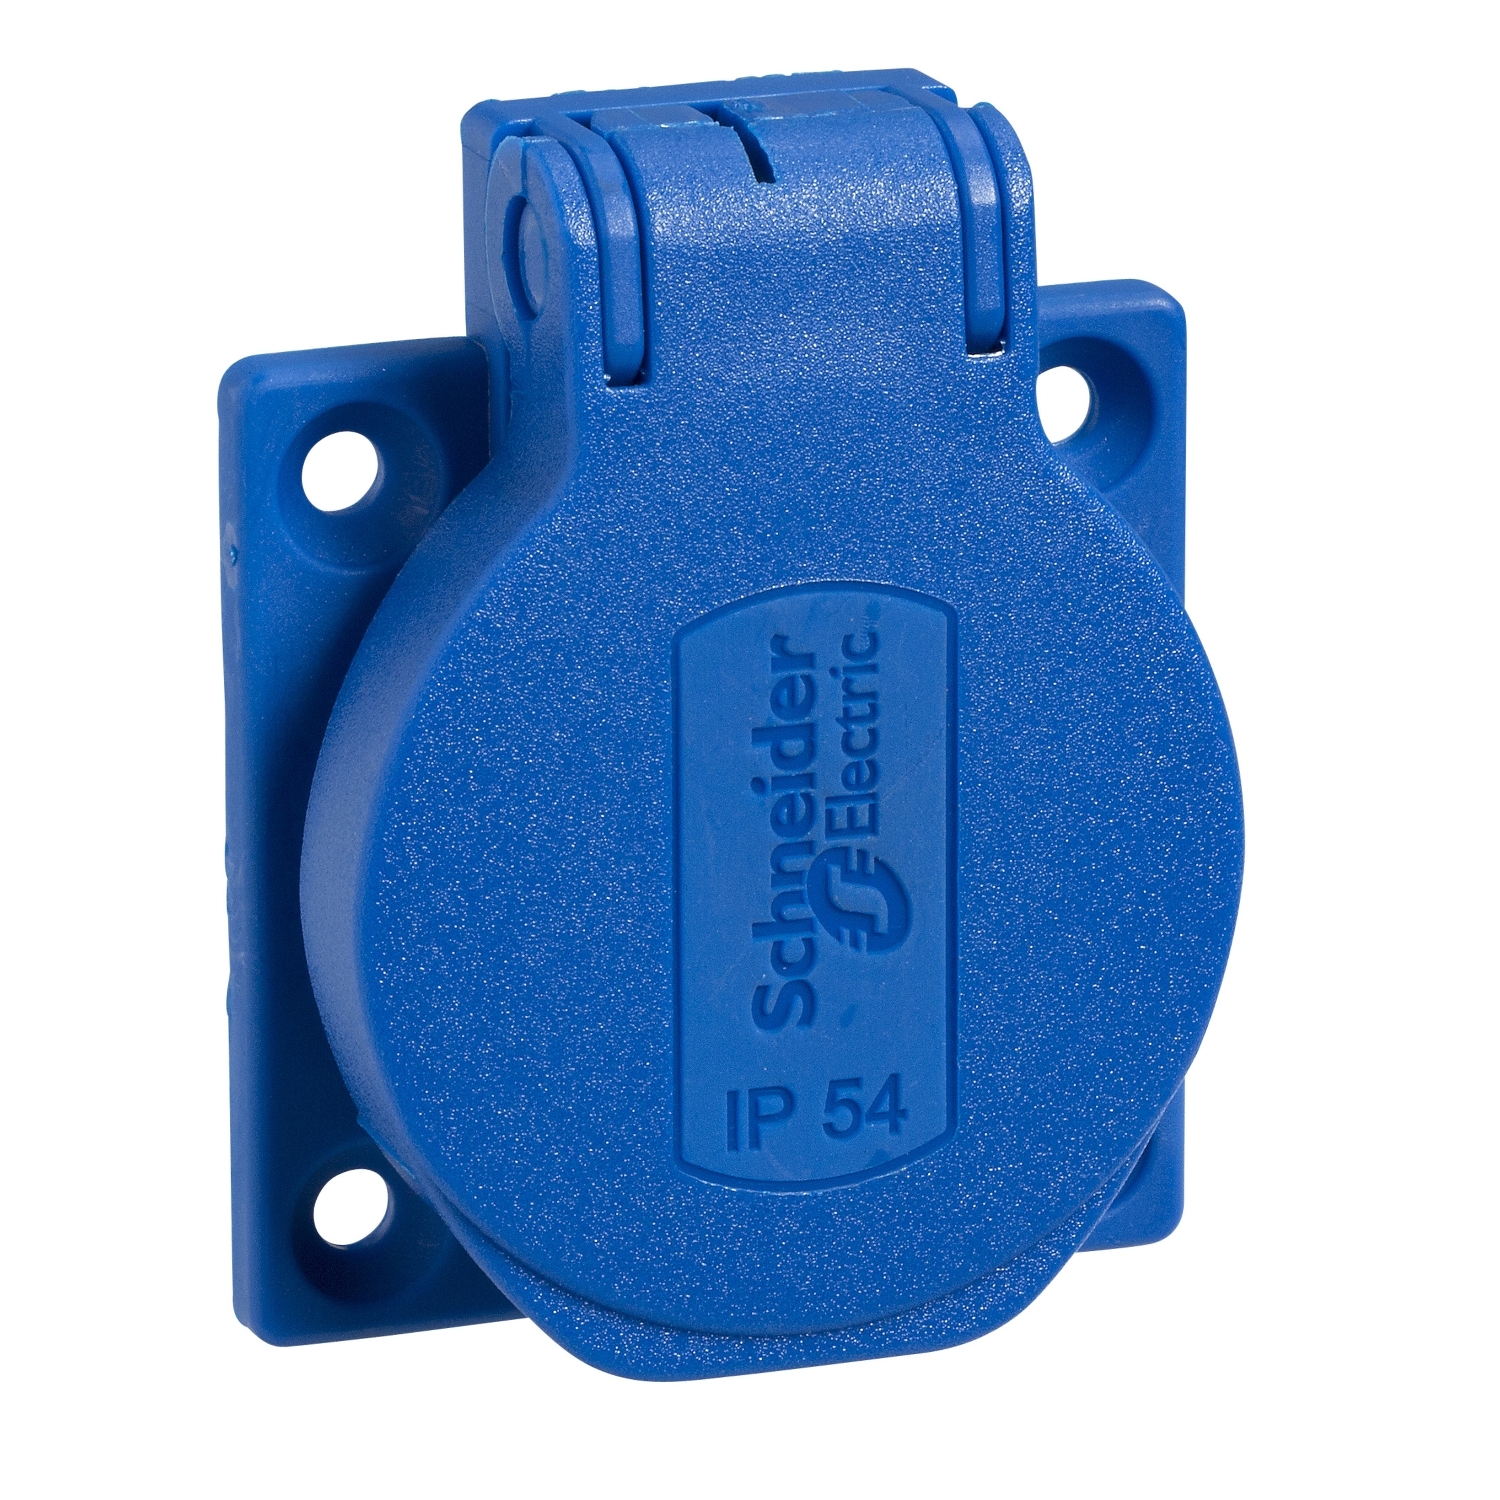 Afbeeldingen van PratiKa stopcontact-blauw-2P + E-10/16 A-250 V-Duits-IP54-verzonken-achter